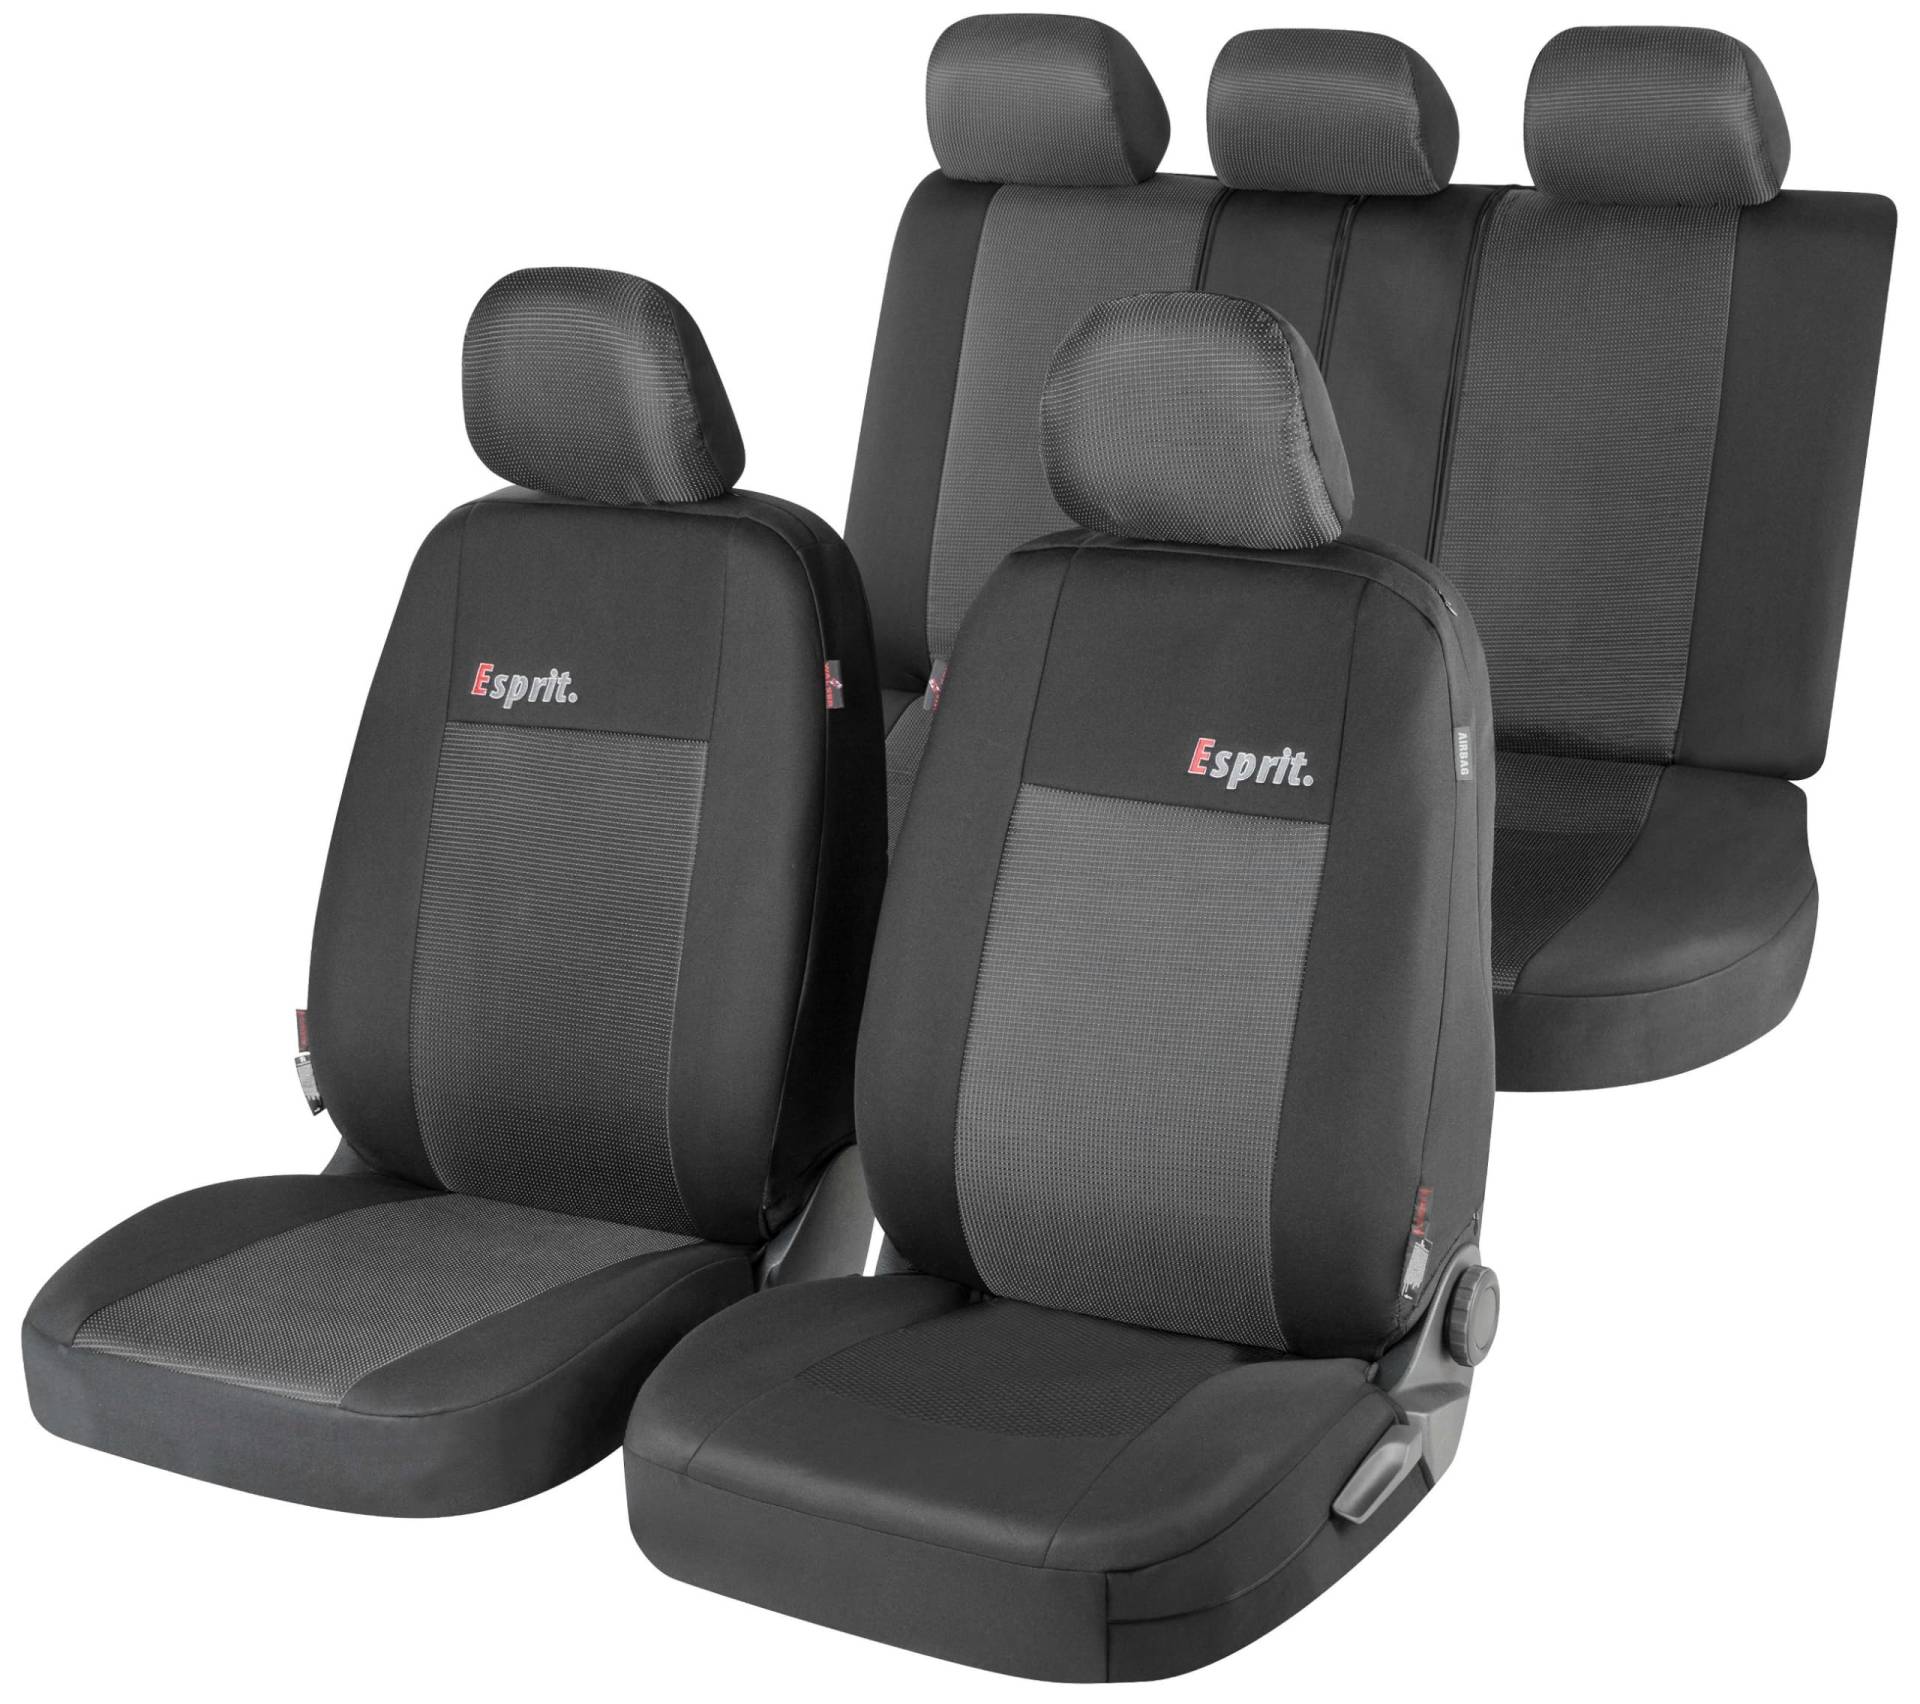 WALSER Auto-Sitzbezug Komplettset Esprit mit Reißverschluss, ZIPP-IT Premium Auto-Schonbezüge für Normalsitze, 2 Vordersitzbezüge, 1 Rücksitzbezug von Walser